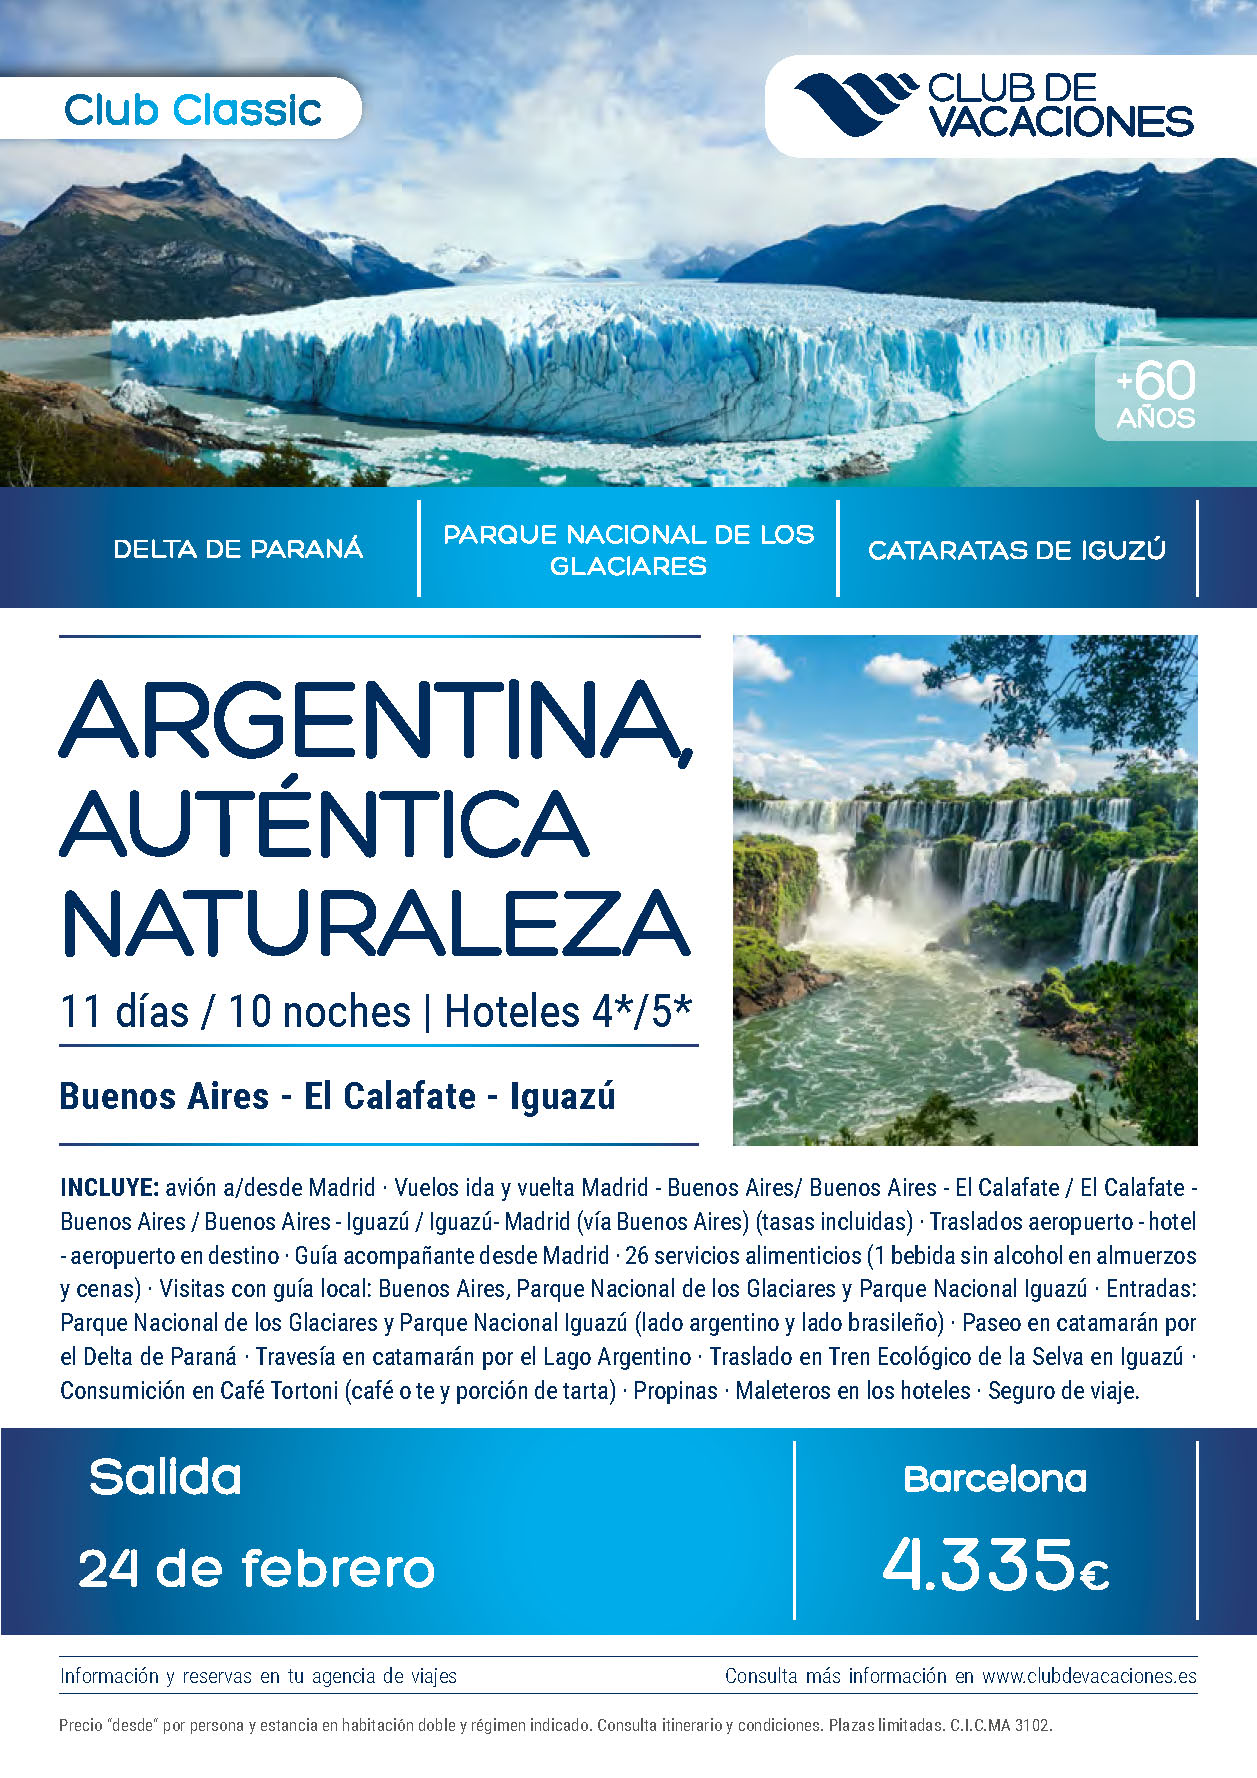 Oferta Club de Vacaciones Argentina Autentica Naturaleza 11 dias Mayores de 60 Febrero 2023 salida desde Barcelona